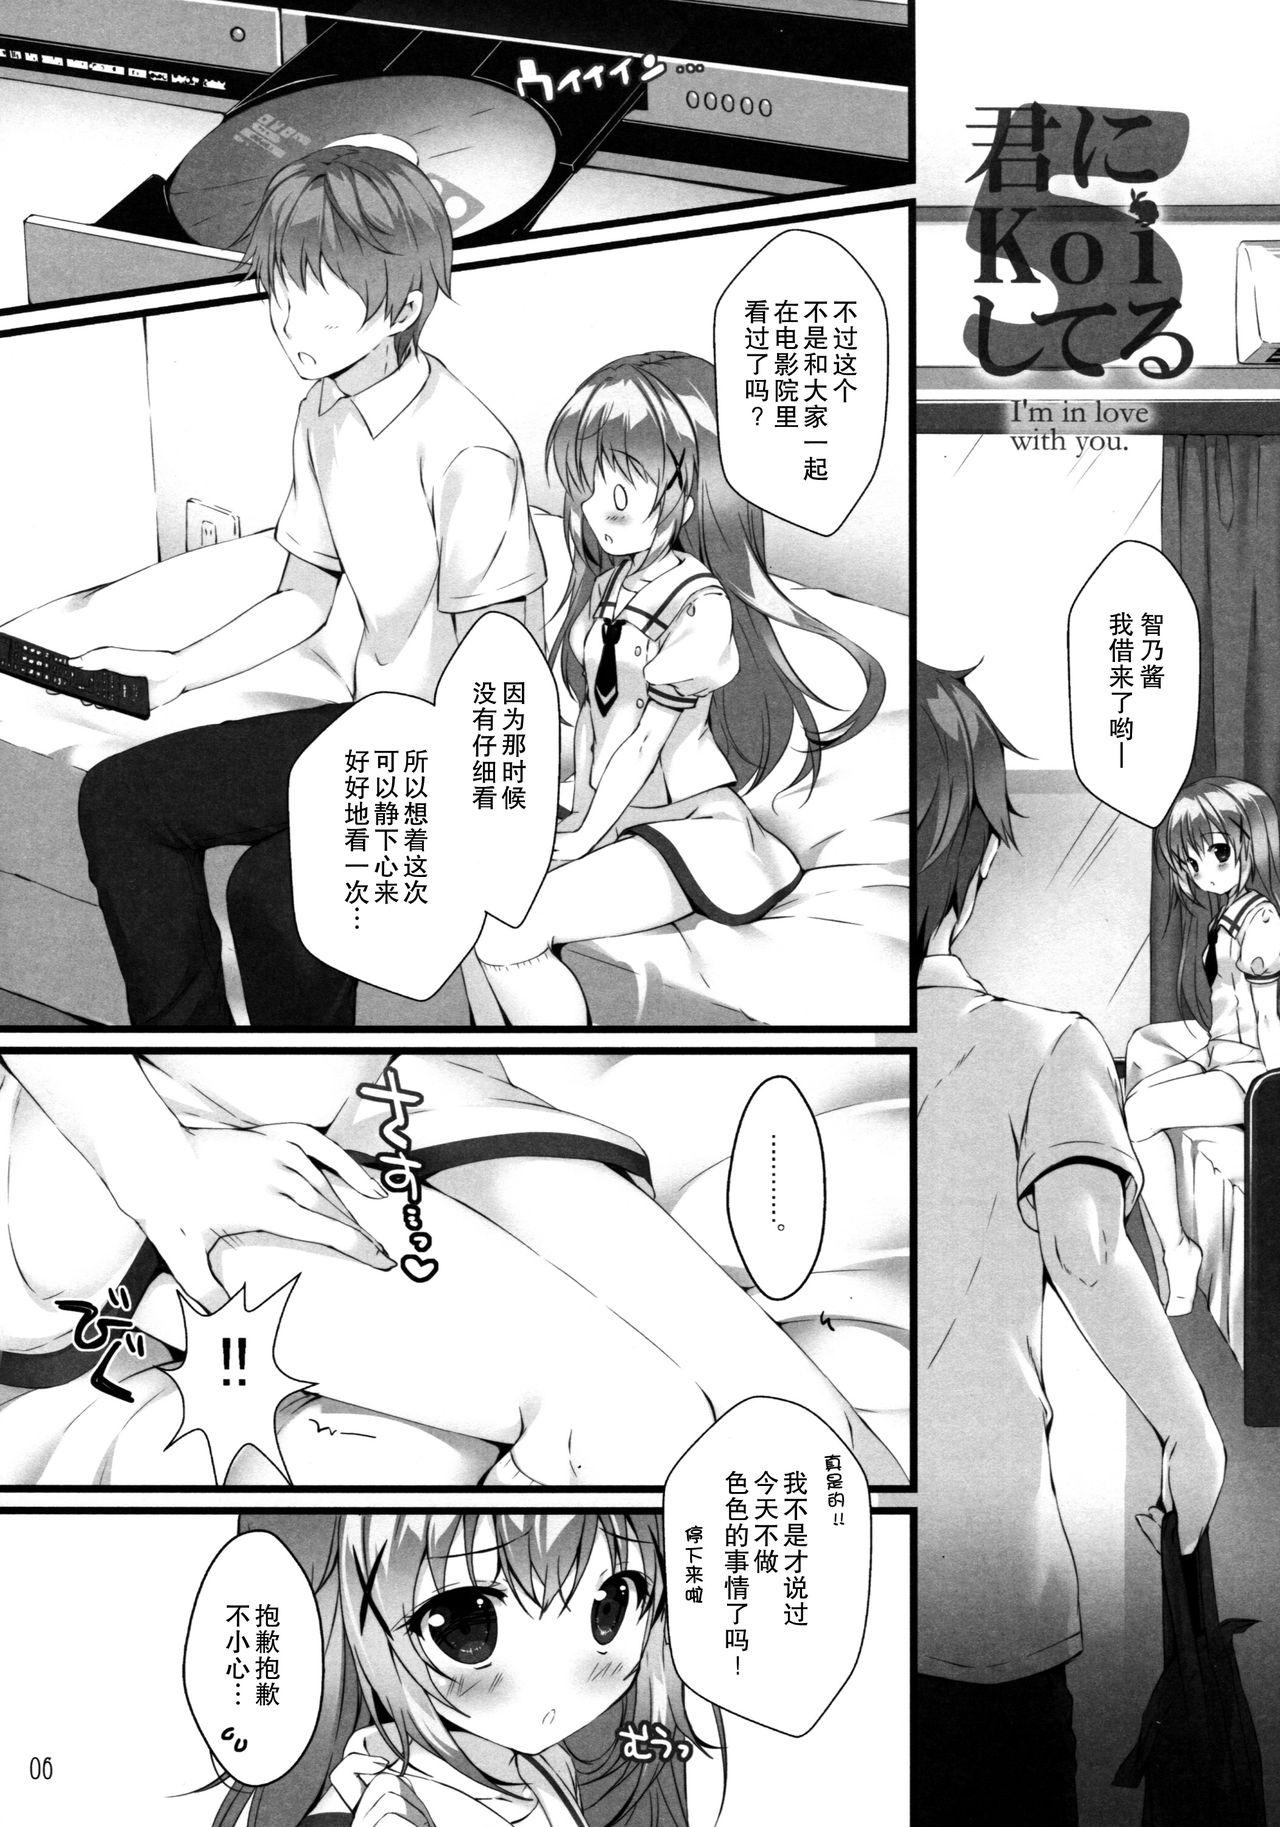 Beurette Kimi ni koi Shiteru 5 - Gochuumon wa usagi desu ka Perfect - Page 6